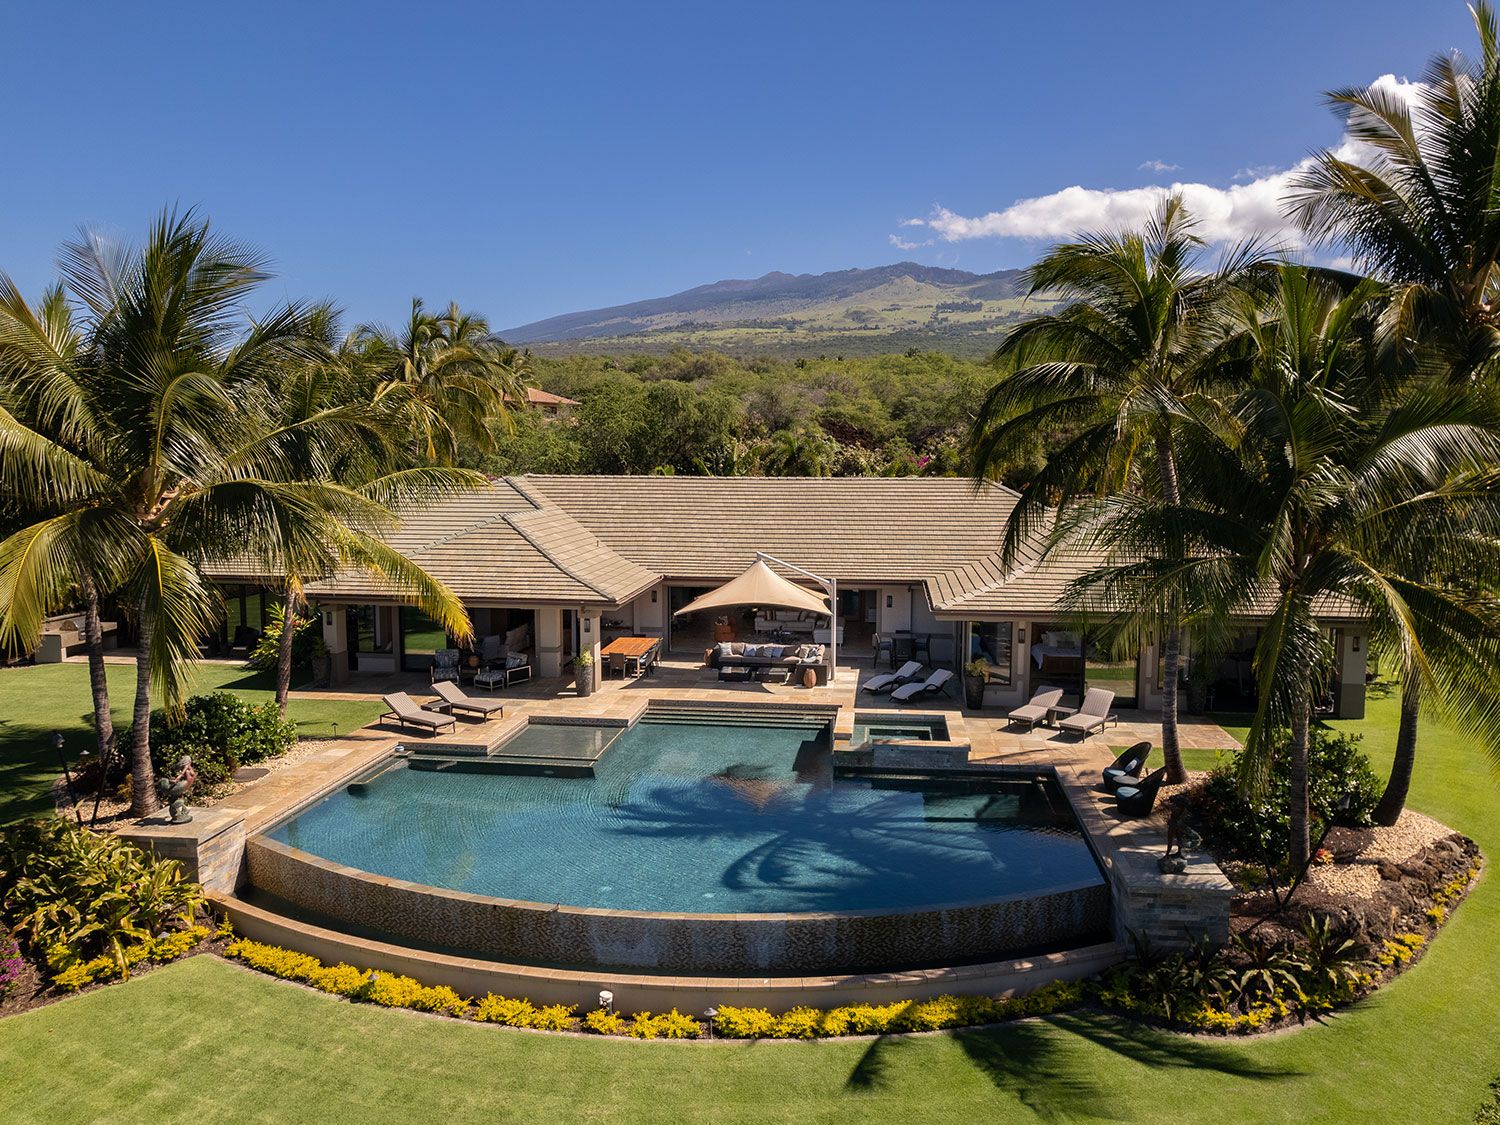 Mire esta rara y fenomenal propiedad de $22.5 millones en Maui 1